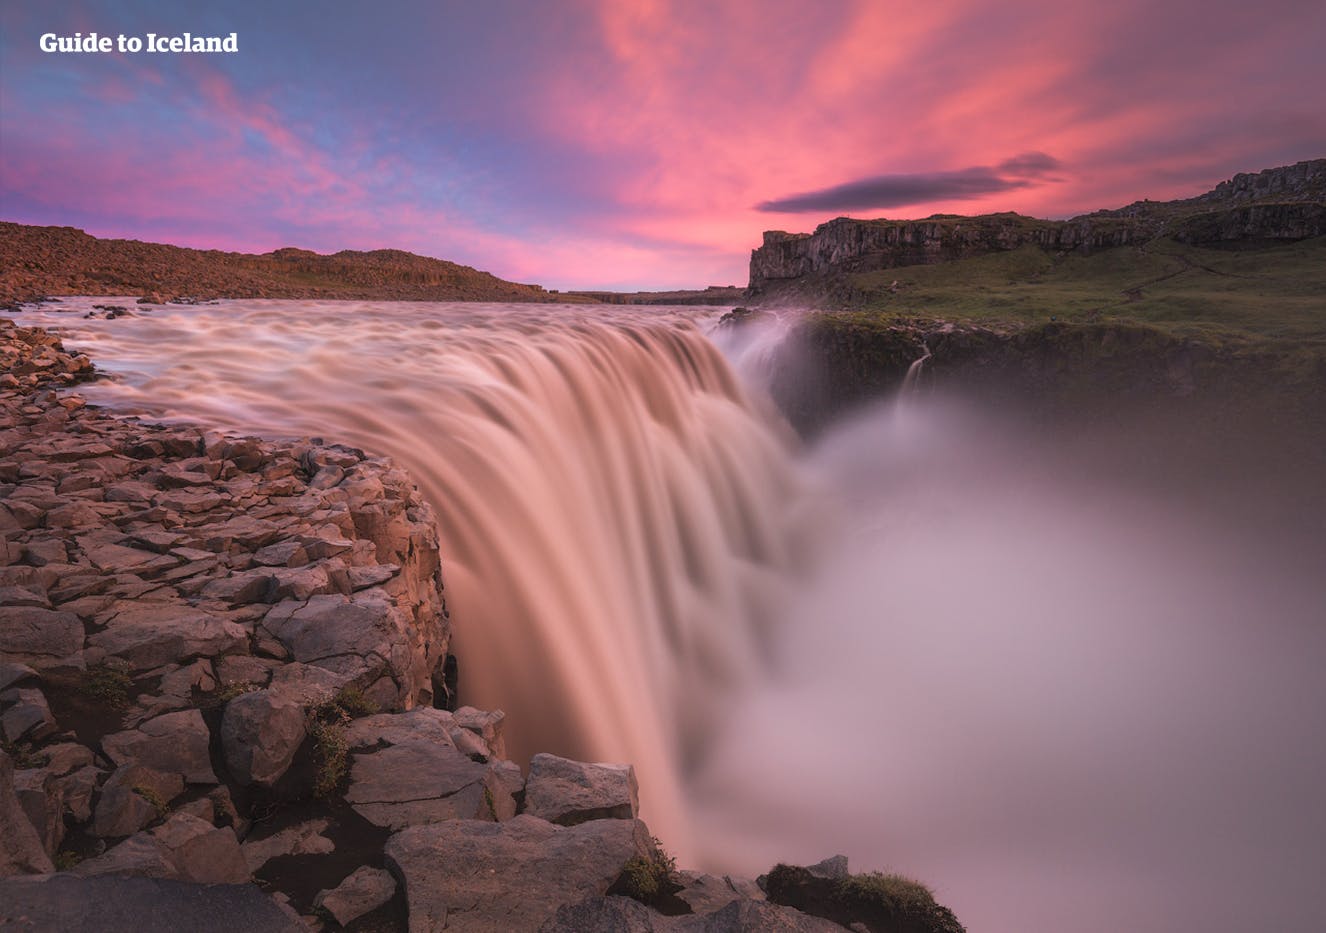 På norra Island finns Dettifoss – ett rytande och häpnadsväckande vattenfall, som sägs vara det mest kraftfulla fallet i Europa